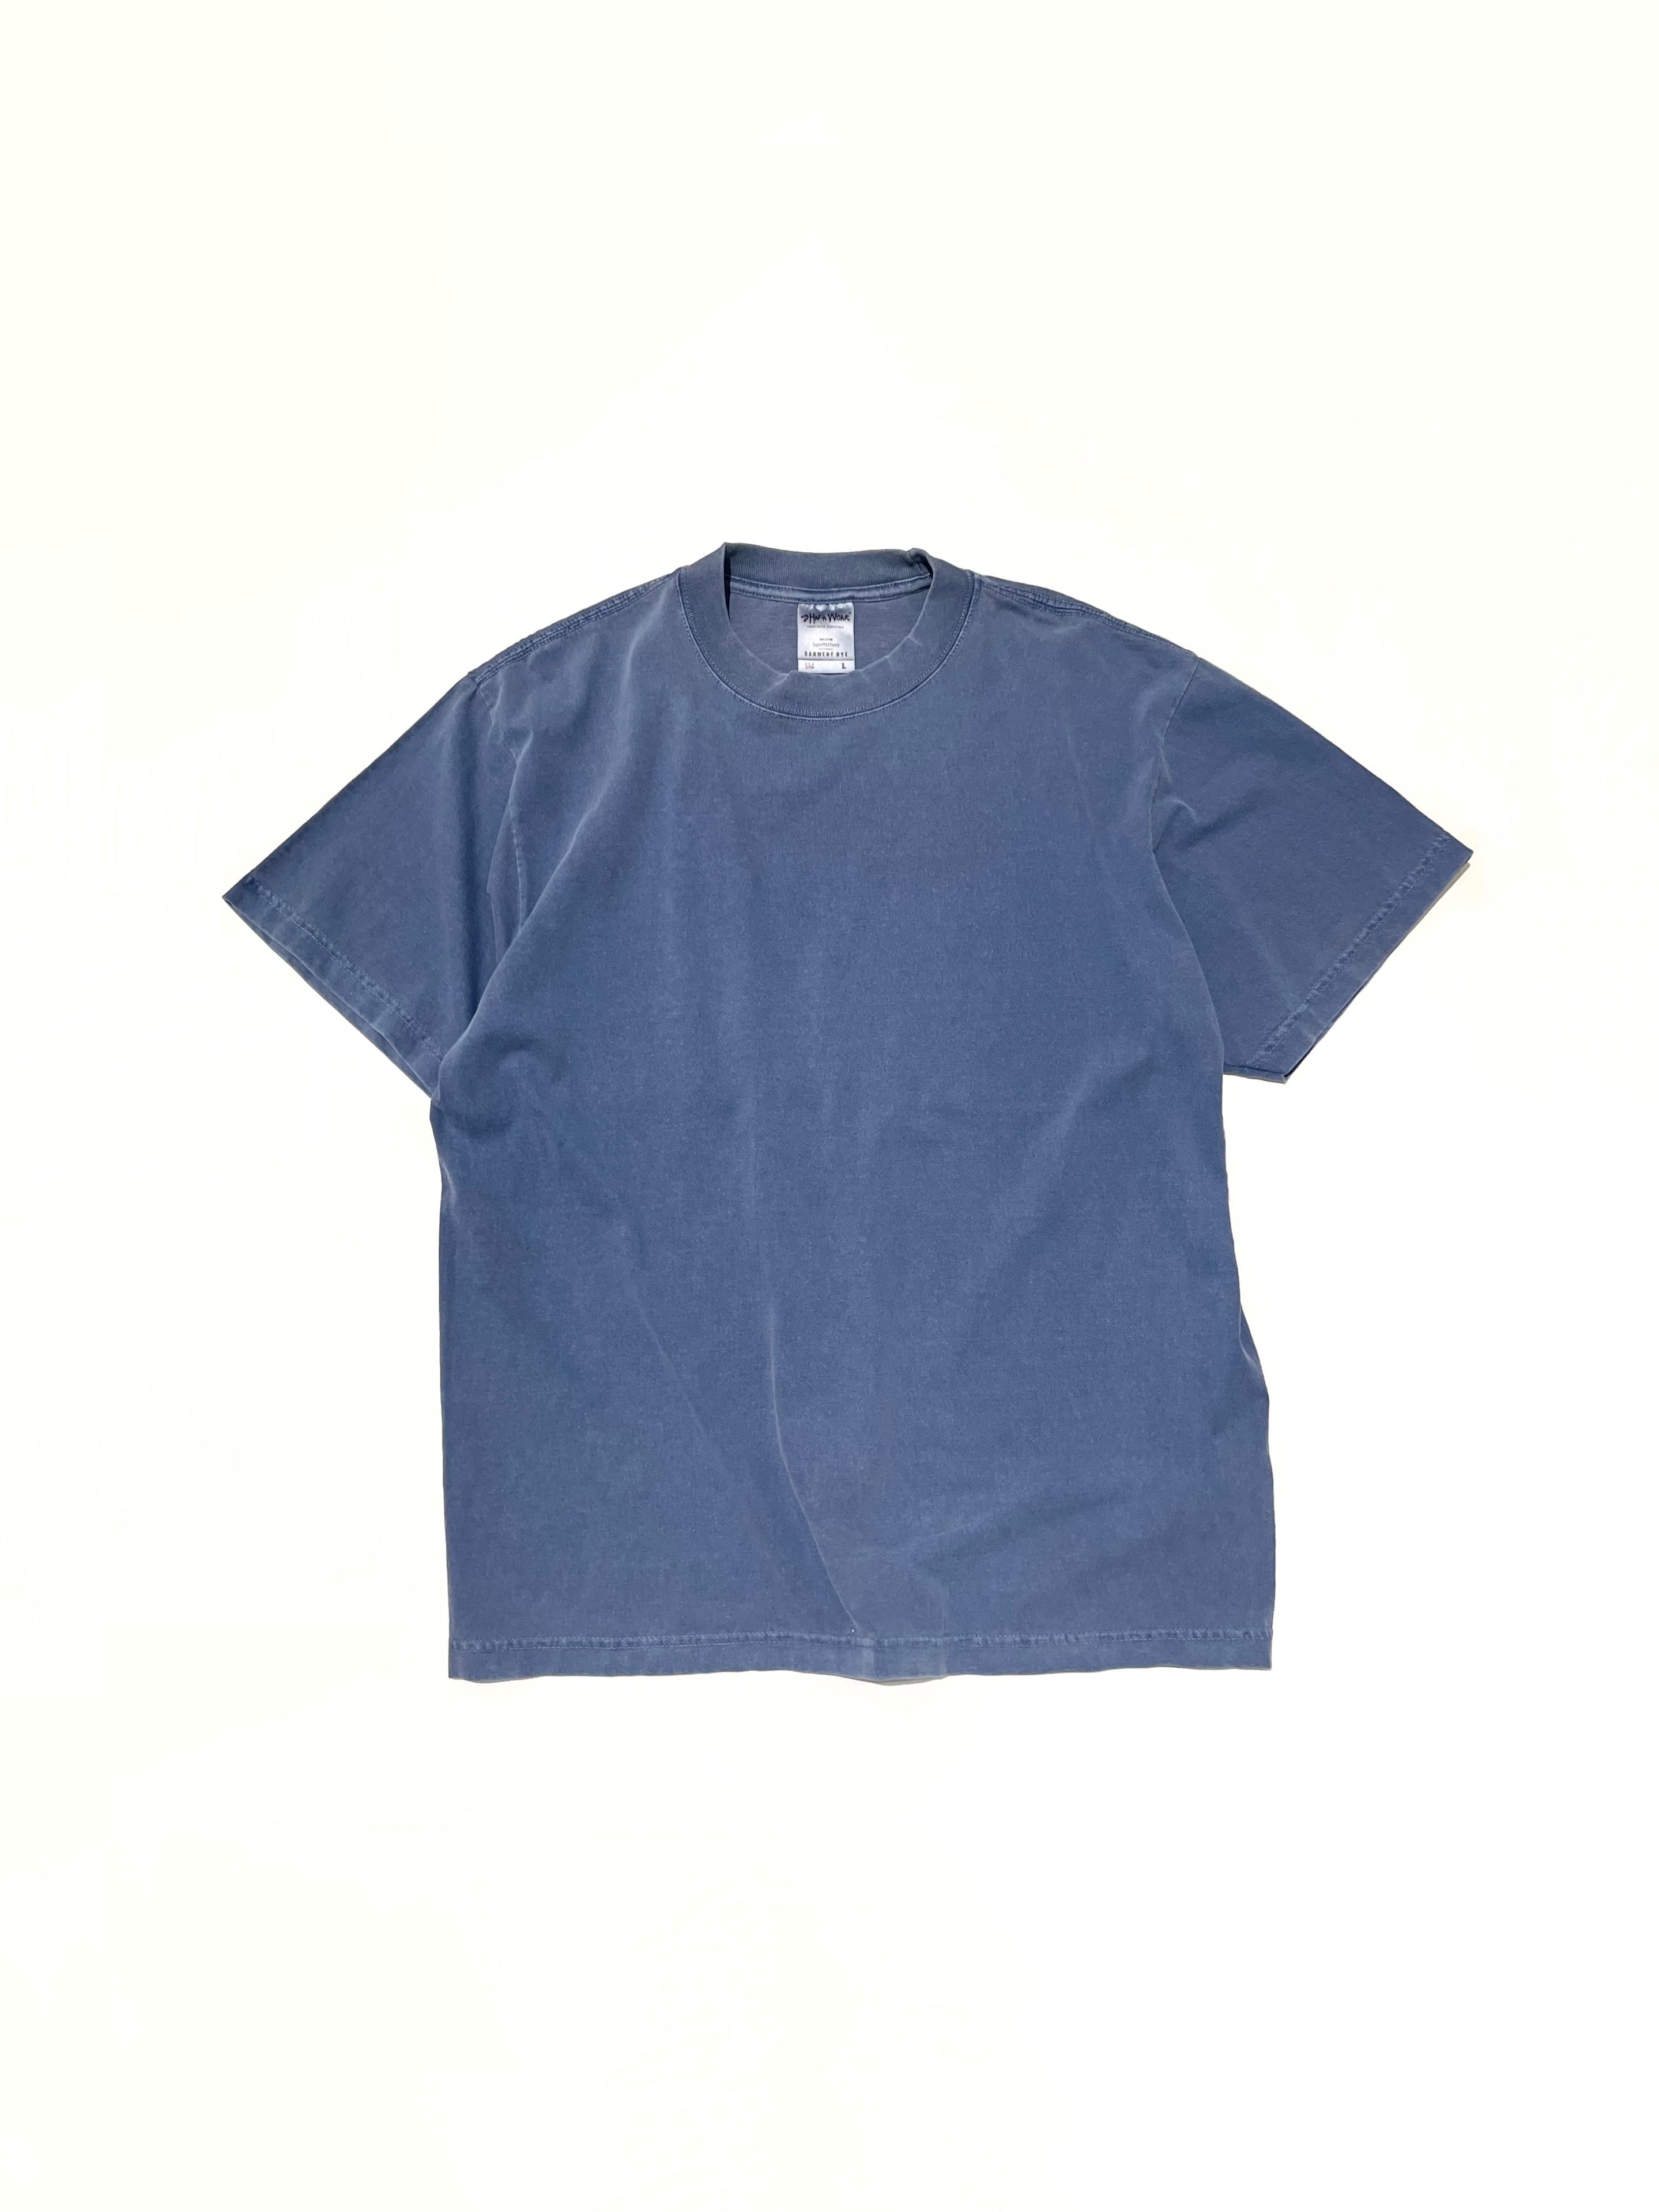 SISN Denim T-Shirt — Sandwich Islands Network